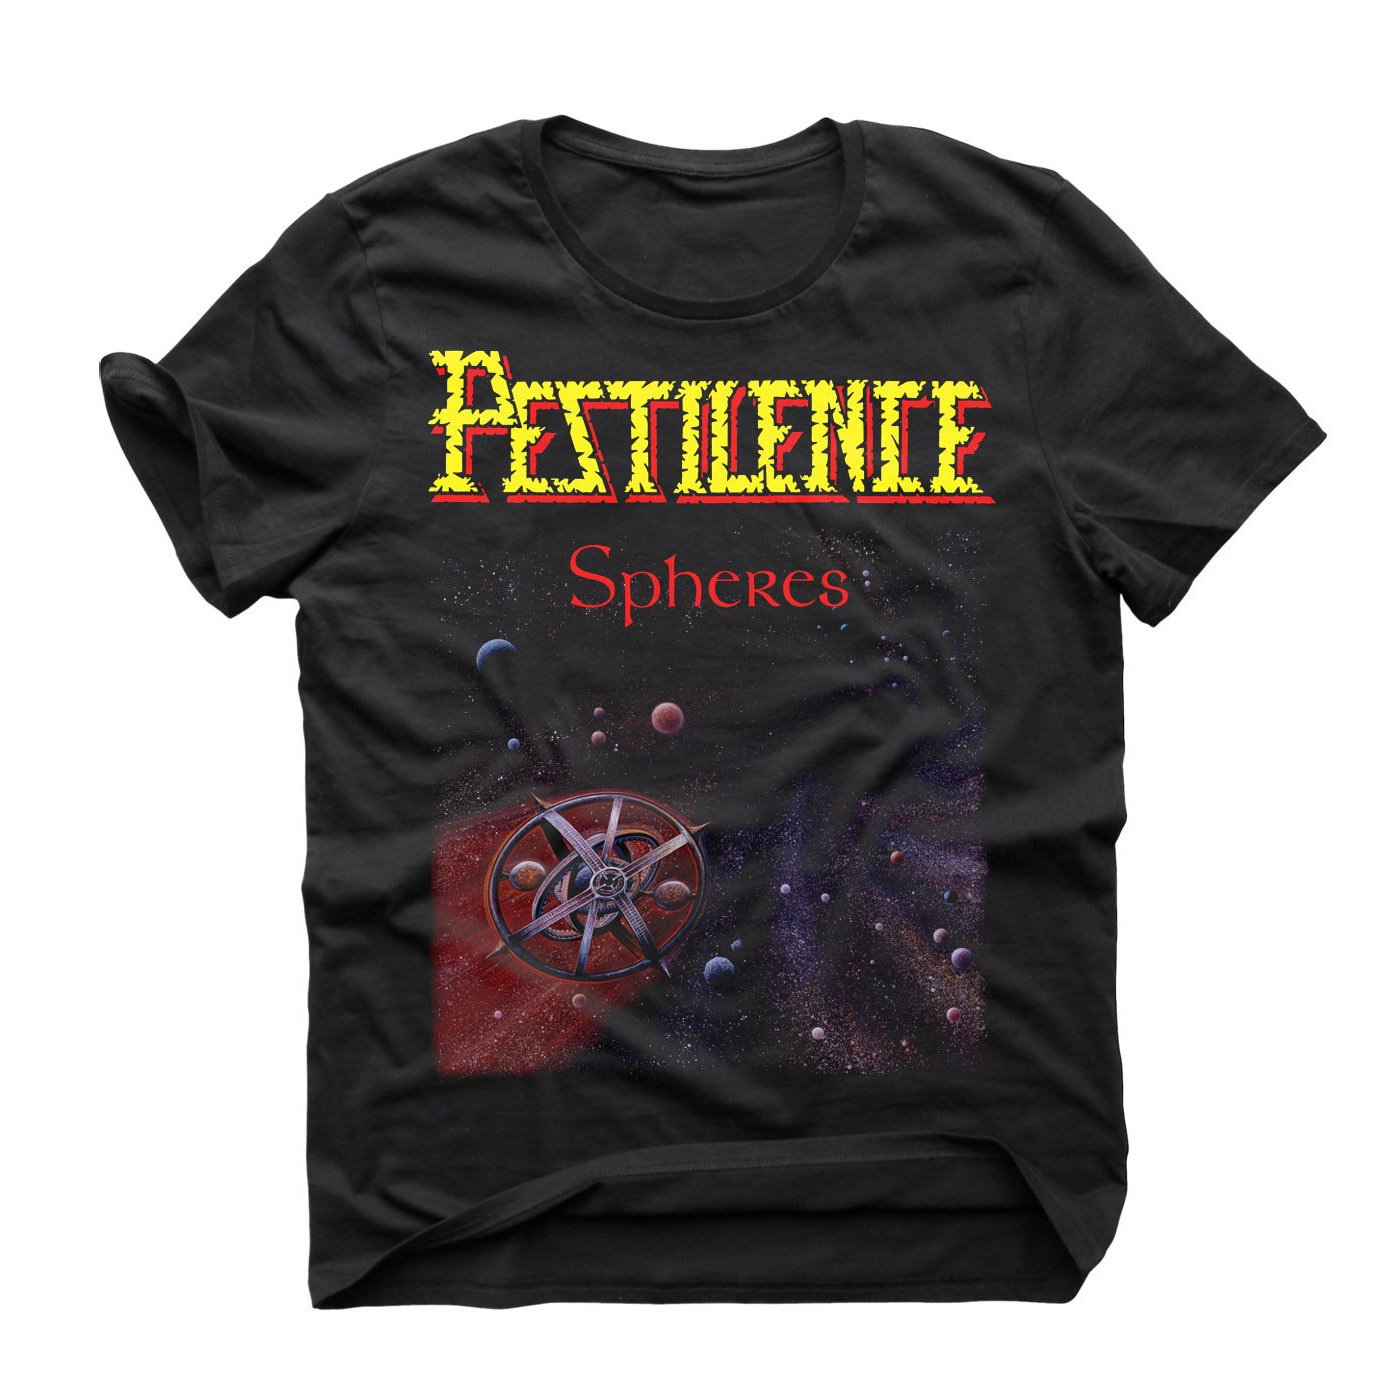 Pestilence "Spheres" T shirt